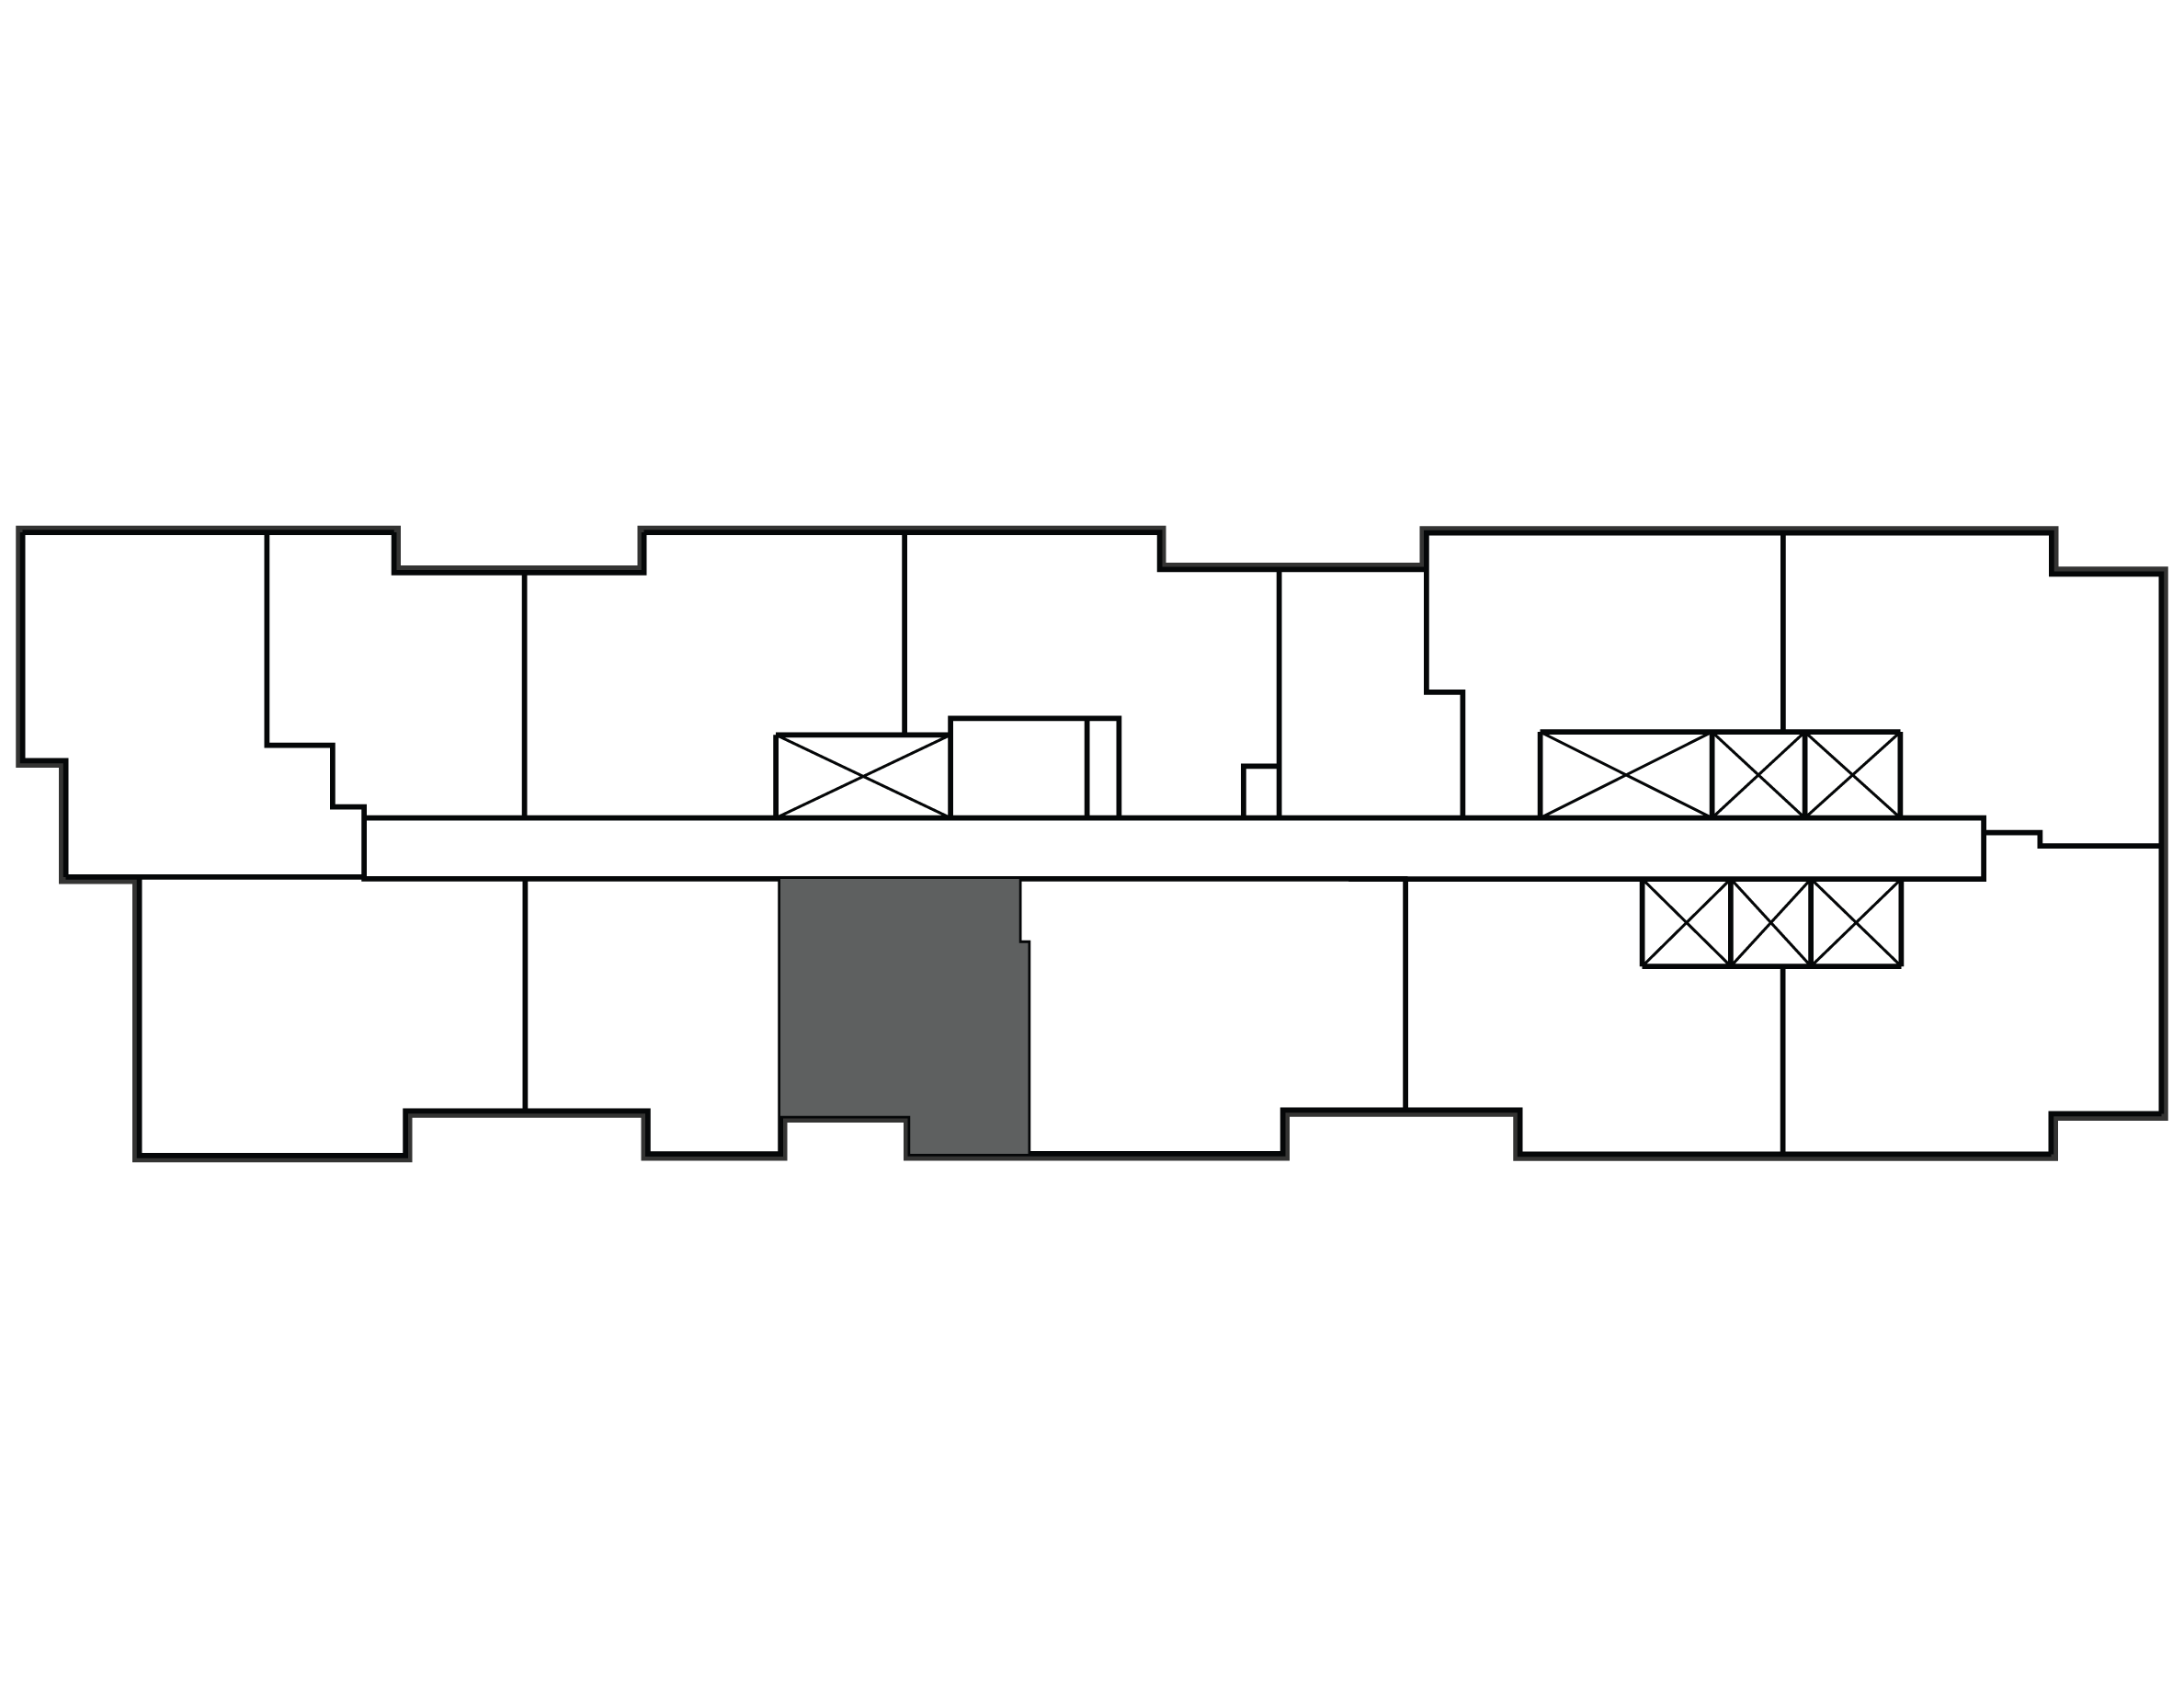 Key plan image of apartment 2304